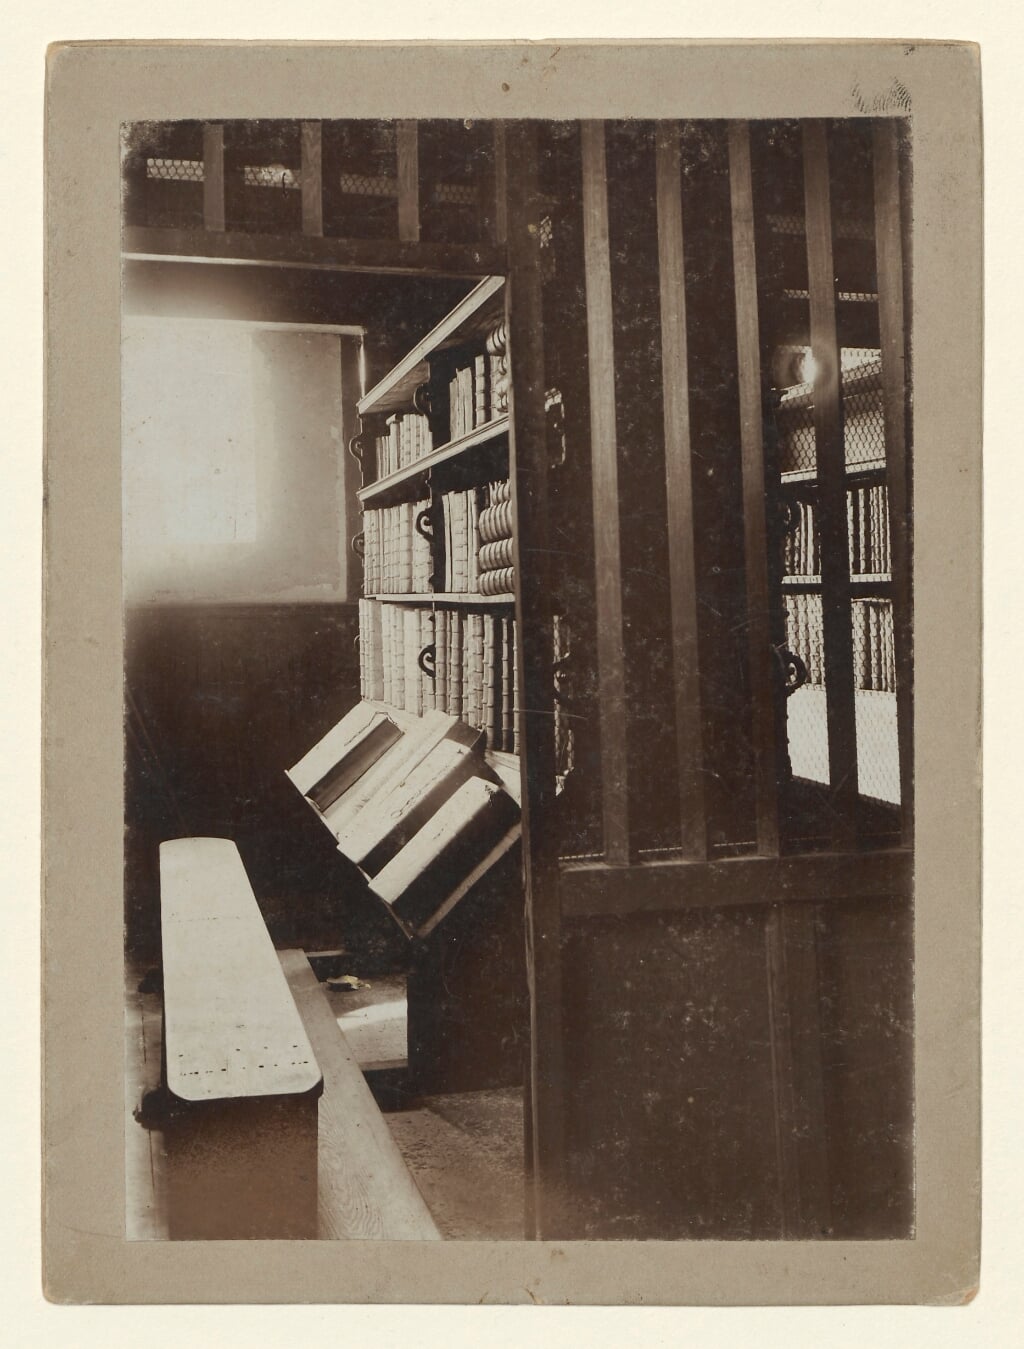 Interieur van de librije in 1894 met boeken waar de ketting nog aan vast zit.